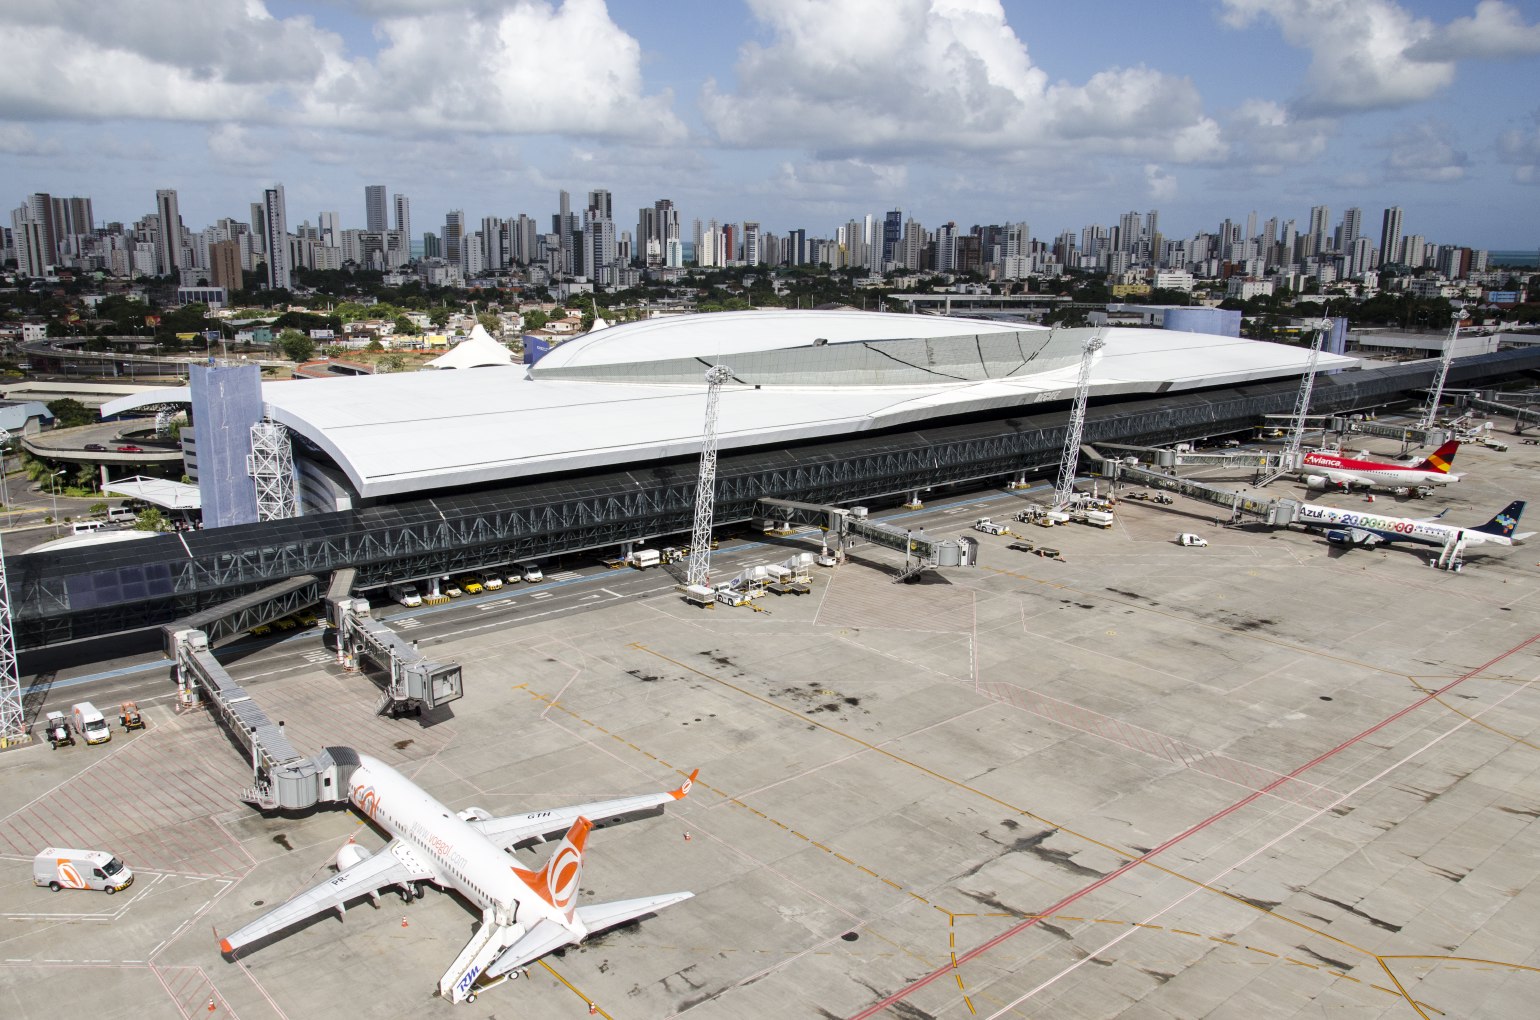 Aeroporto Internacional do Recife — Guararapes Gilberto Freyre